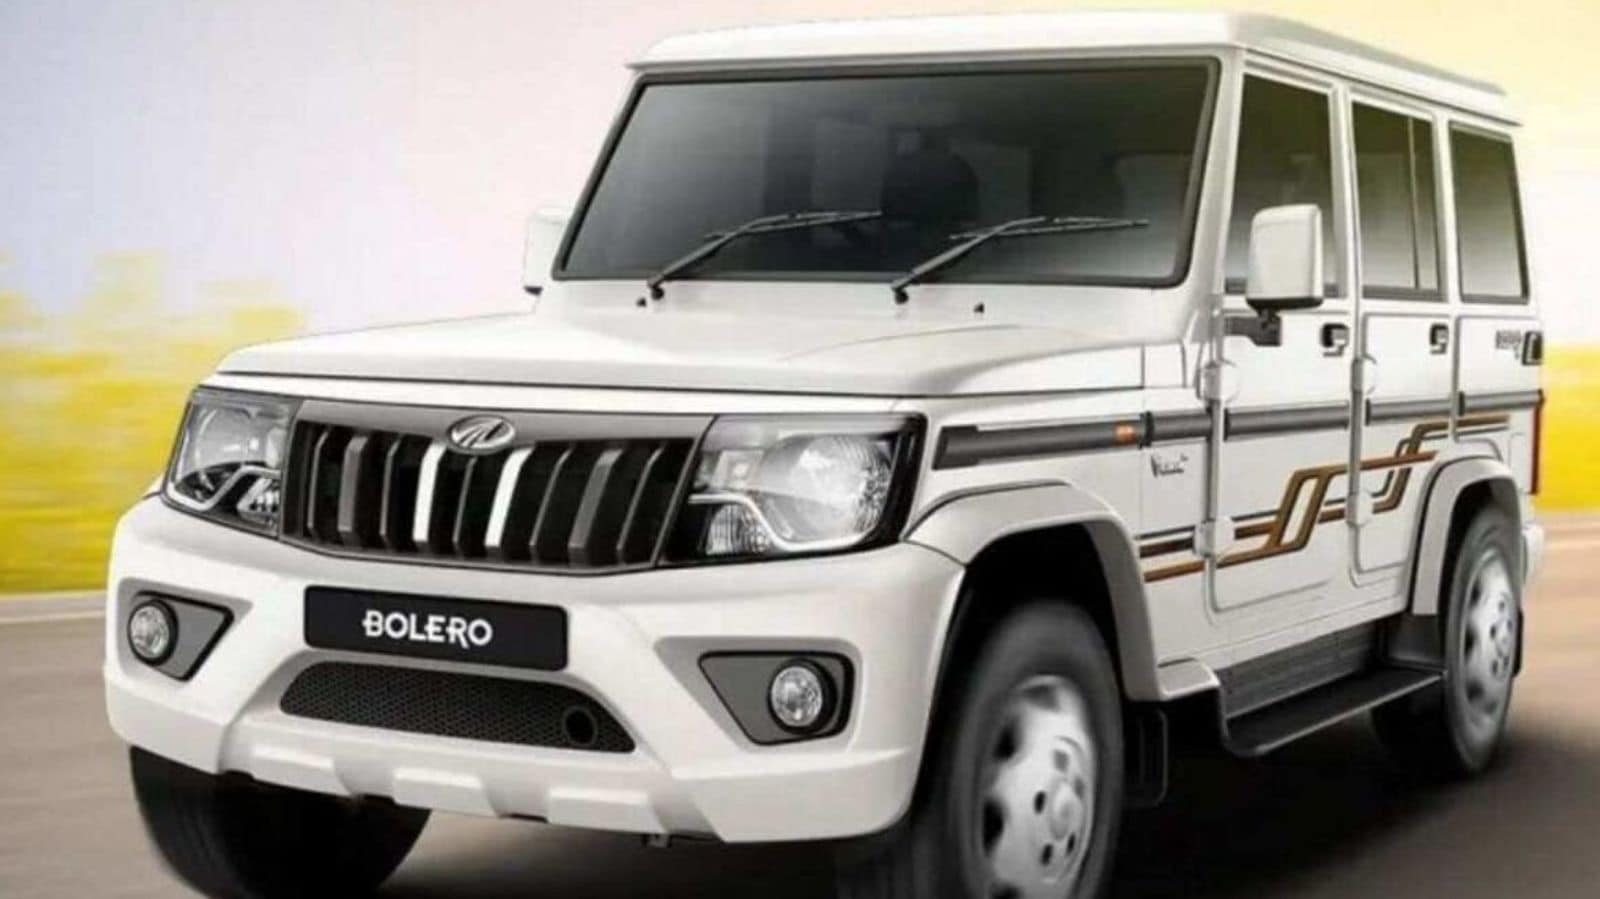 Allnew Mahindra Bolero officially confirmed for launch HT Auto